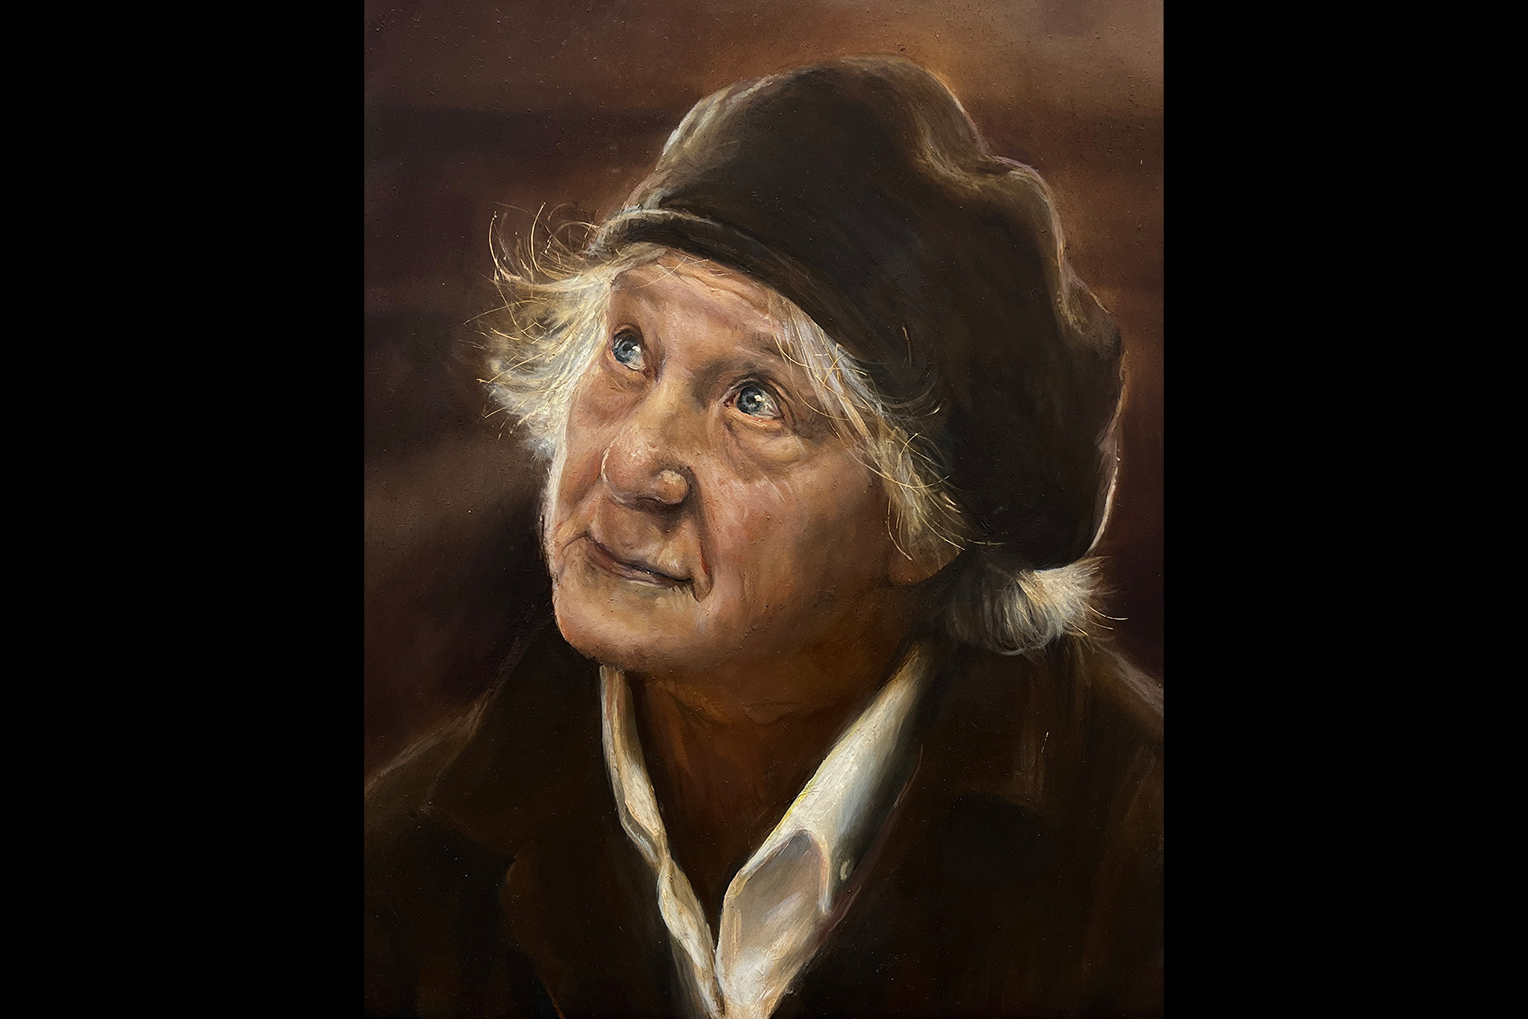 A portrait of an elderly woman.